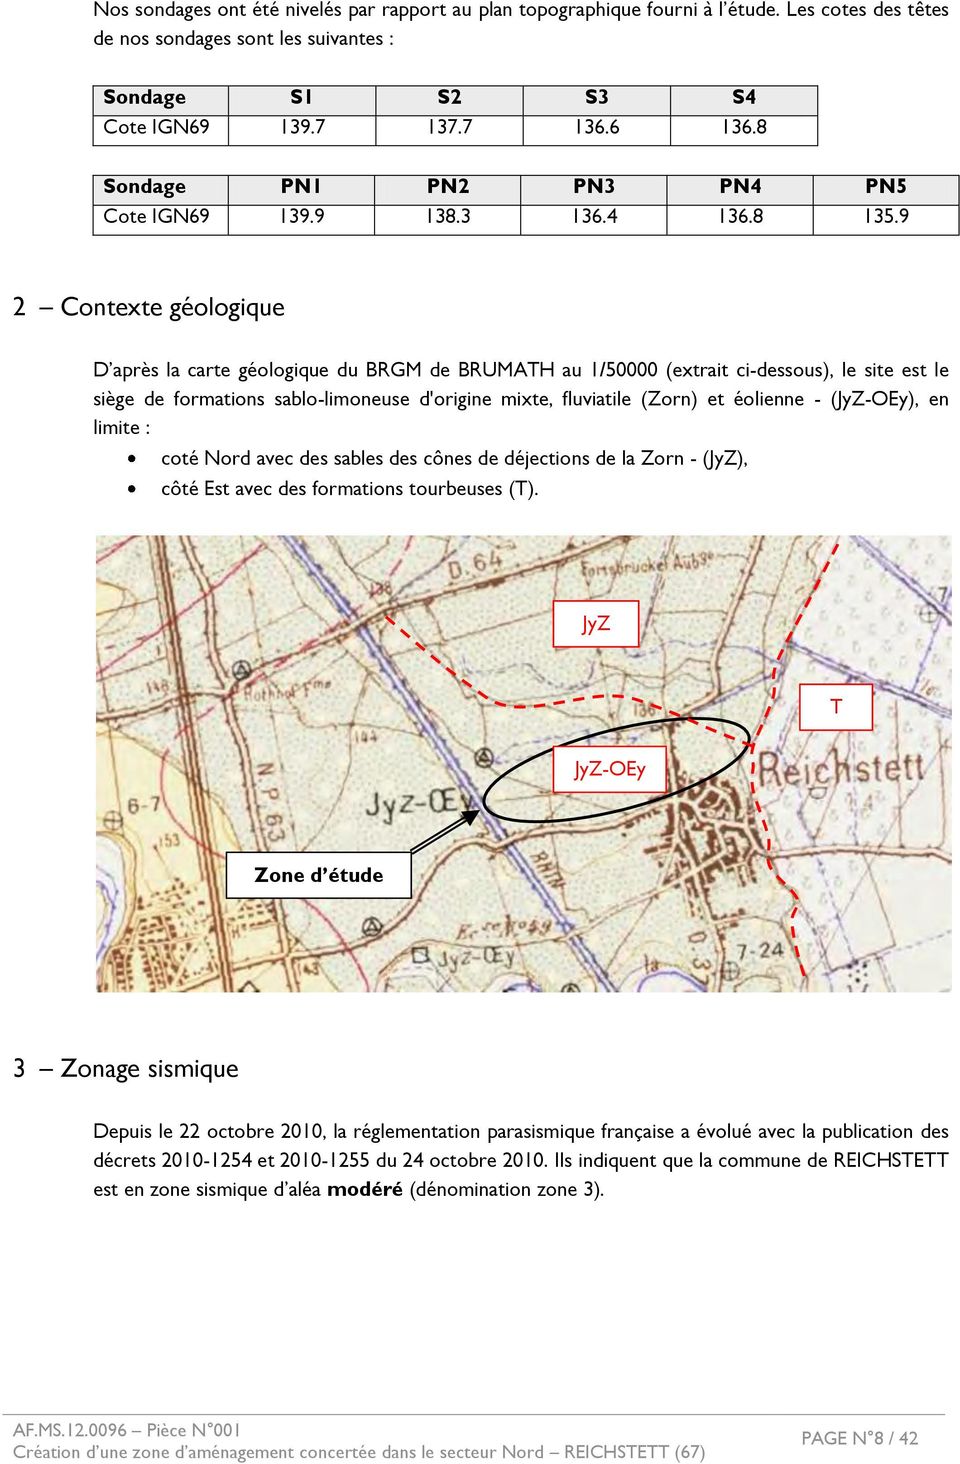 9 2 Ŕ Contexte géologique D après la carte géologique du BRGM de BRUMATH au 1/50000 (extrait ci-dessous), le site est le siège de formations sablo-limoneuse d'origine mixte, fluviatile (Zorn) et